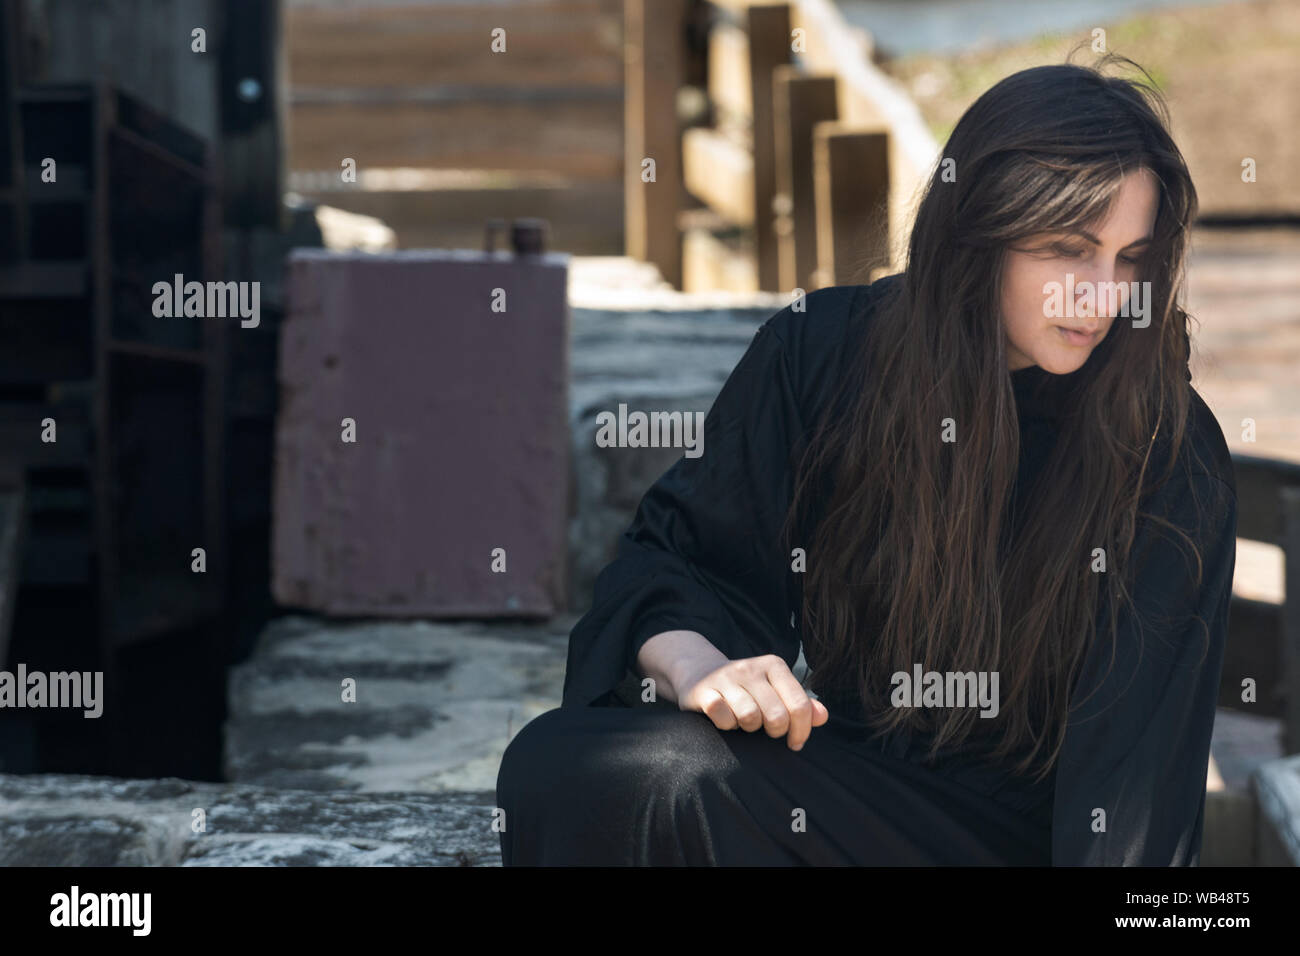 Mujer joven con largo cabello oscuro en túnicas negras en frente de un antiguo molino de agua de madera. Las Brujas. Concepto de Halloween. La brujería y la magia. Foto de stock